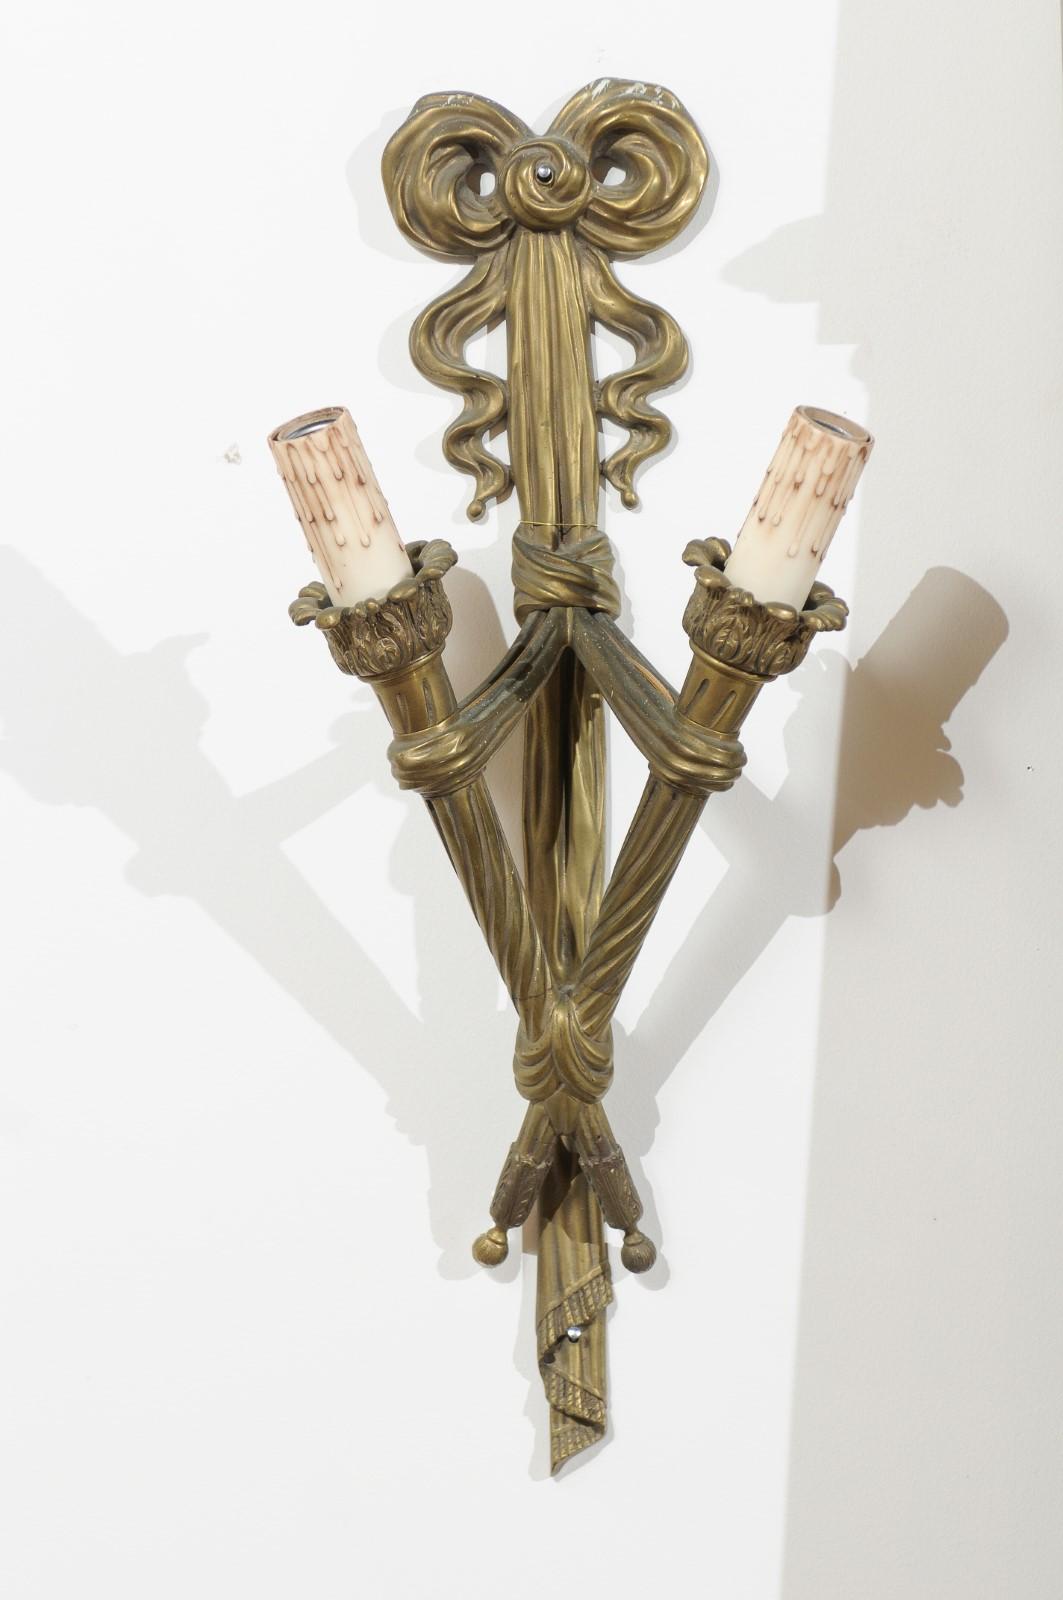 Ein Paar französischer zweiflammiger Bronzewandleuchter aus dem 19. Jahrhundert mit Fackeln, die mit Bändern verbunden sind. Dieses Paar Wandleuchter stammt aus dem Frankreich des 19. Jahrhunderts und besteht aus zwei Fackeln mit Bändern, die ihre